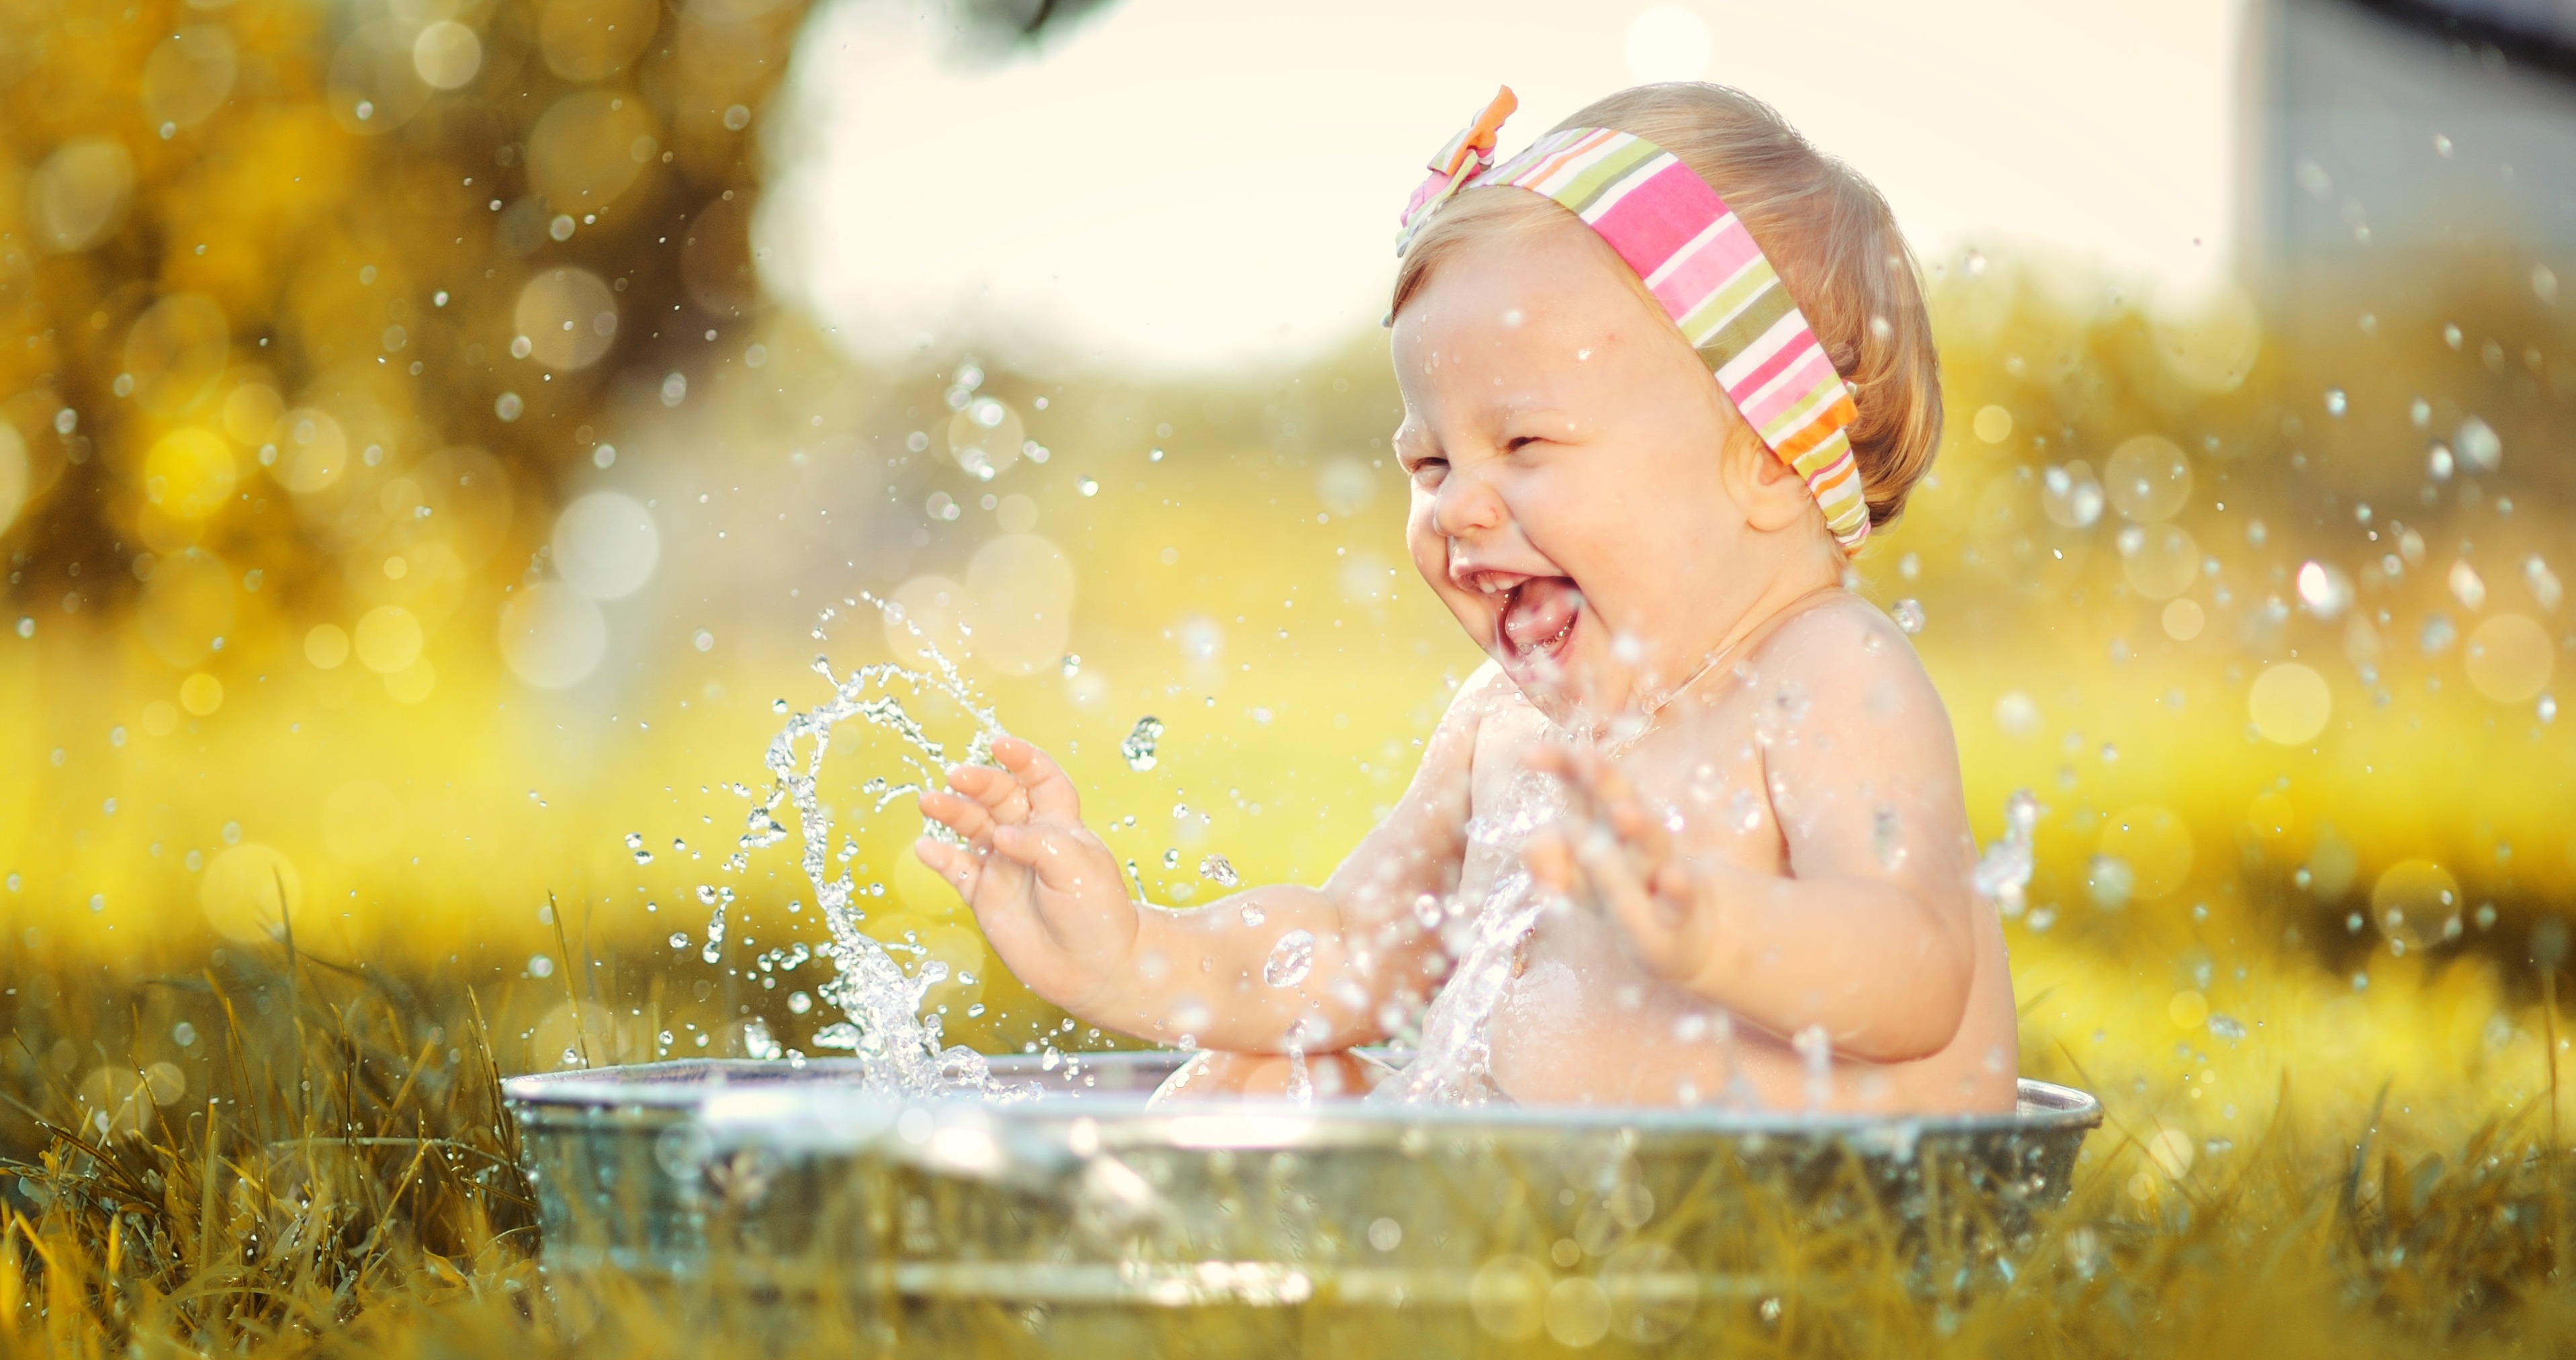 Jouer avec l'eau : pourquoi les petits adorent